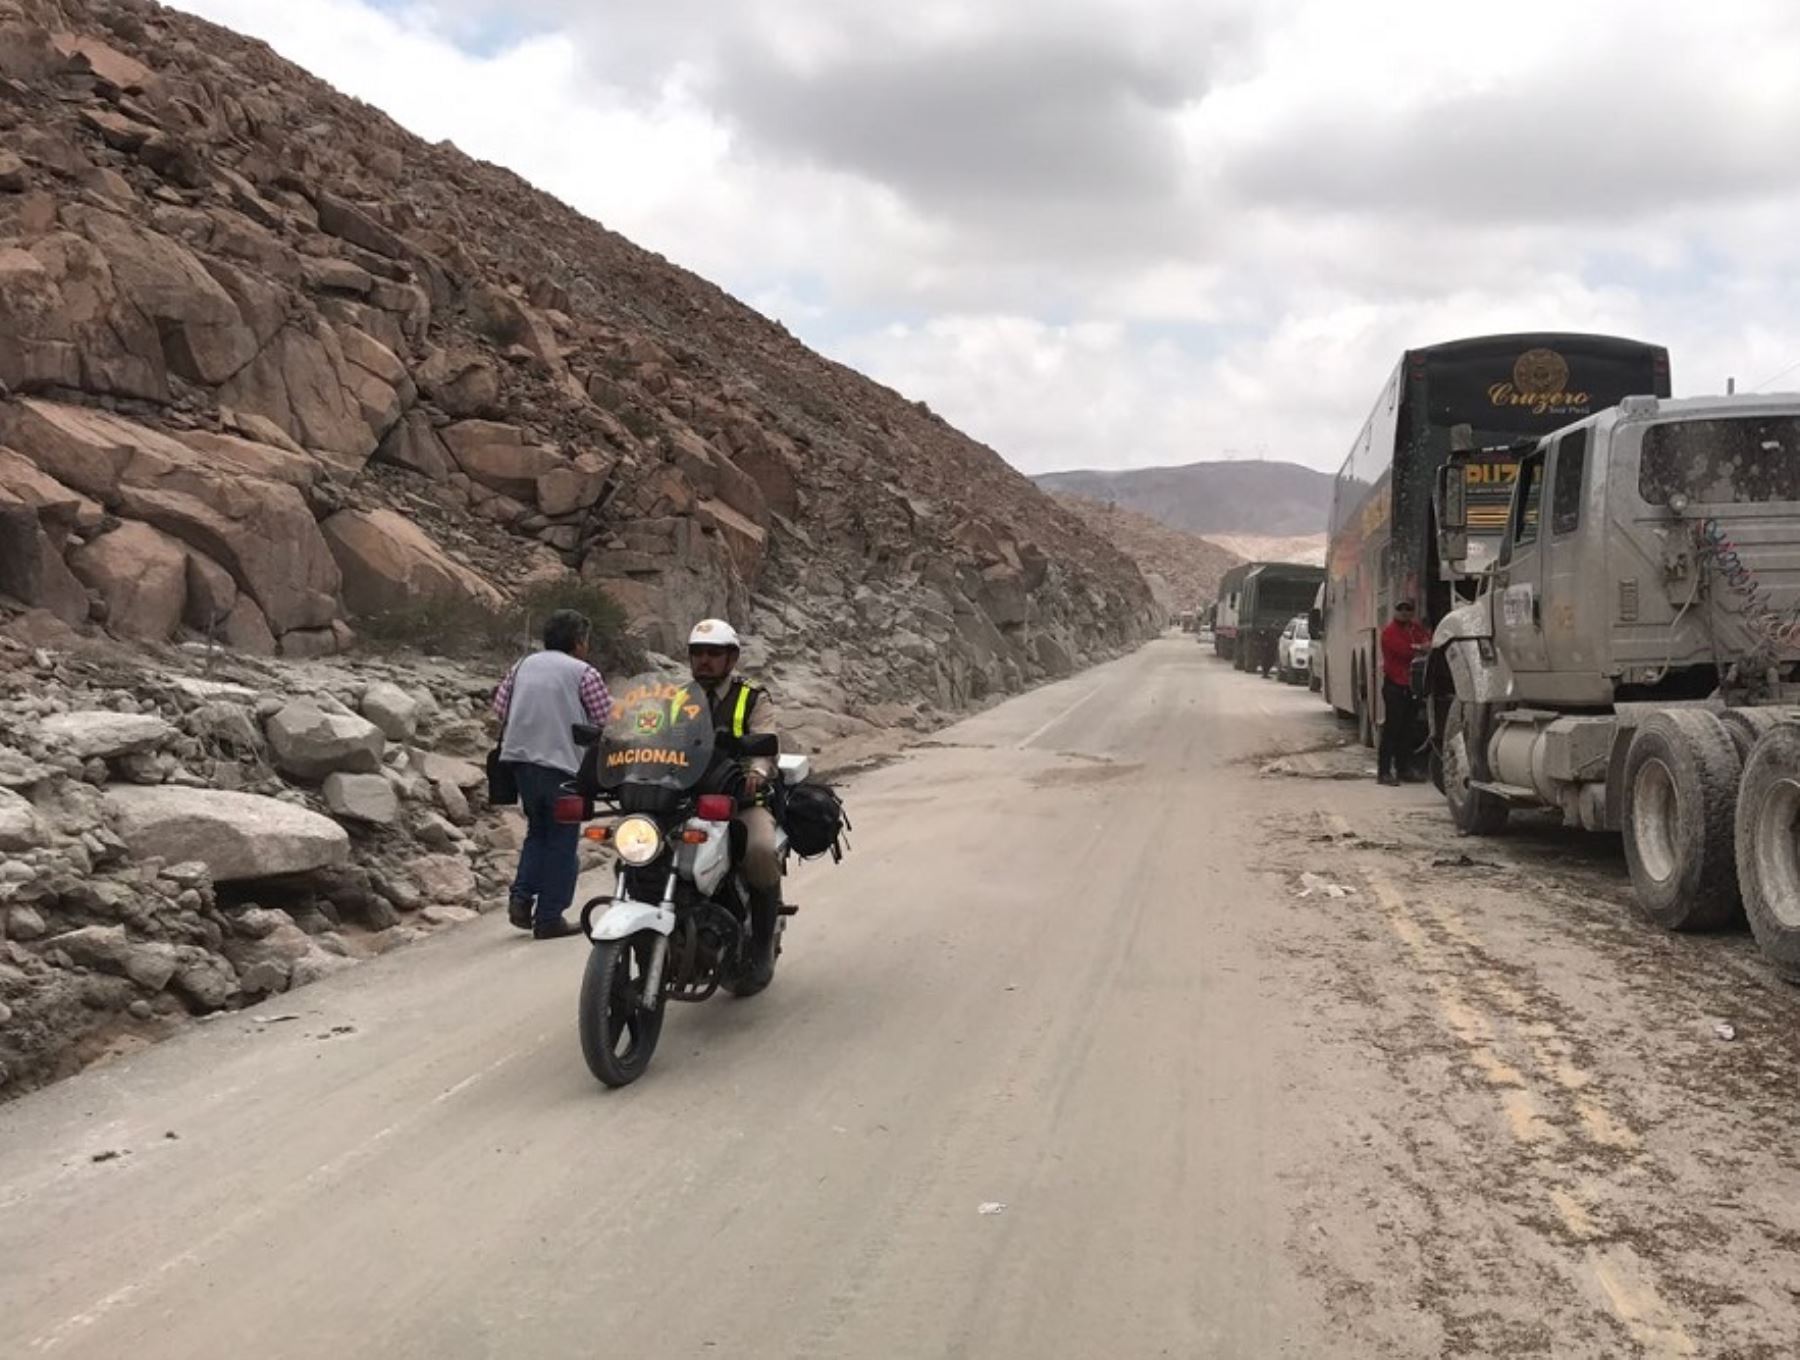 La Unidad de Protección de Carreteras de la Policía Nacional del Perú (PNP) informó que hay dos tramos de carretera en la región Áncash que permanecen bloqueadas debido a la caída de un huaico y al desprendimiento de la pista debido a la crecida de un río. ANDINA/Difusión